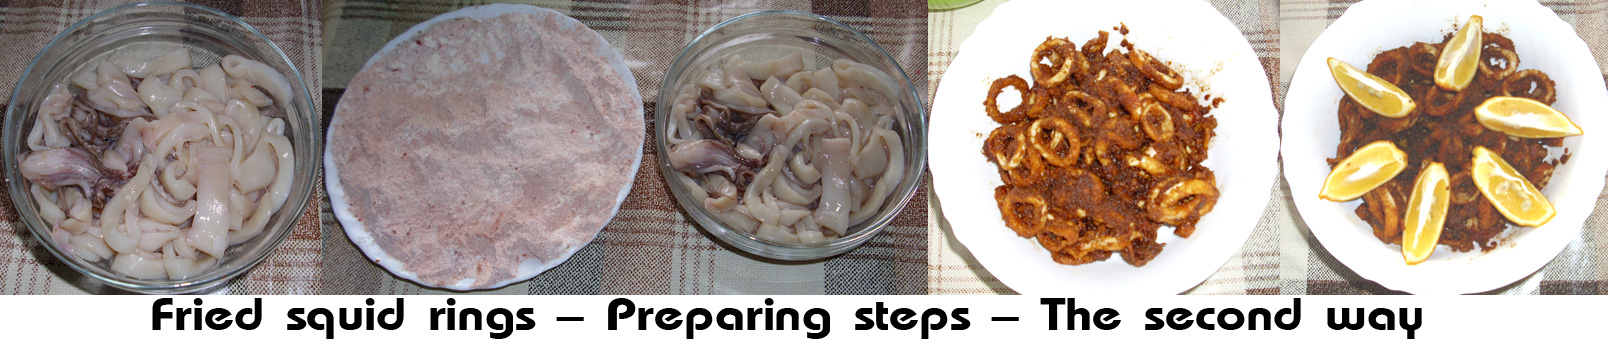 Fried squid rings - Preparing steps 2